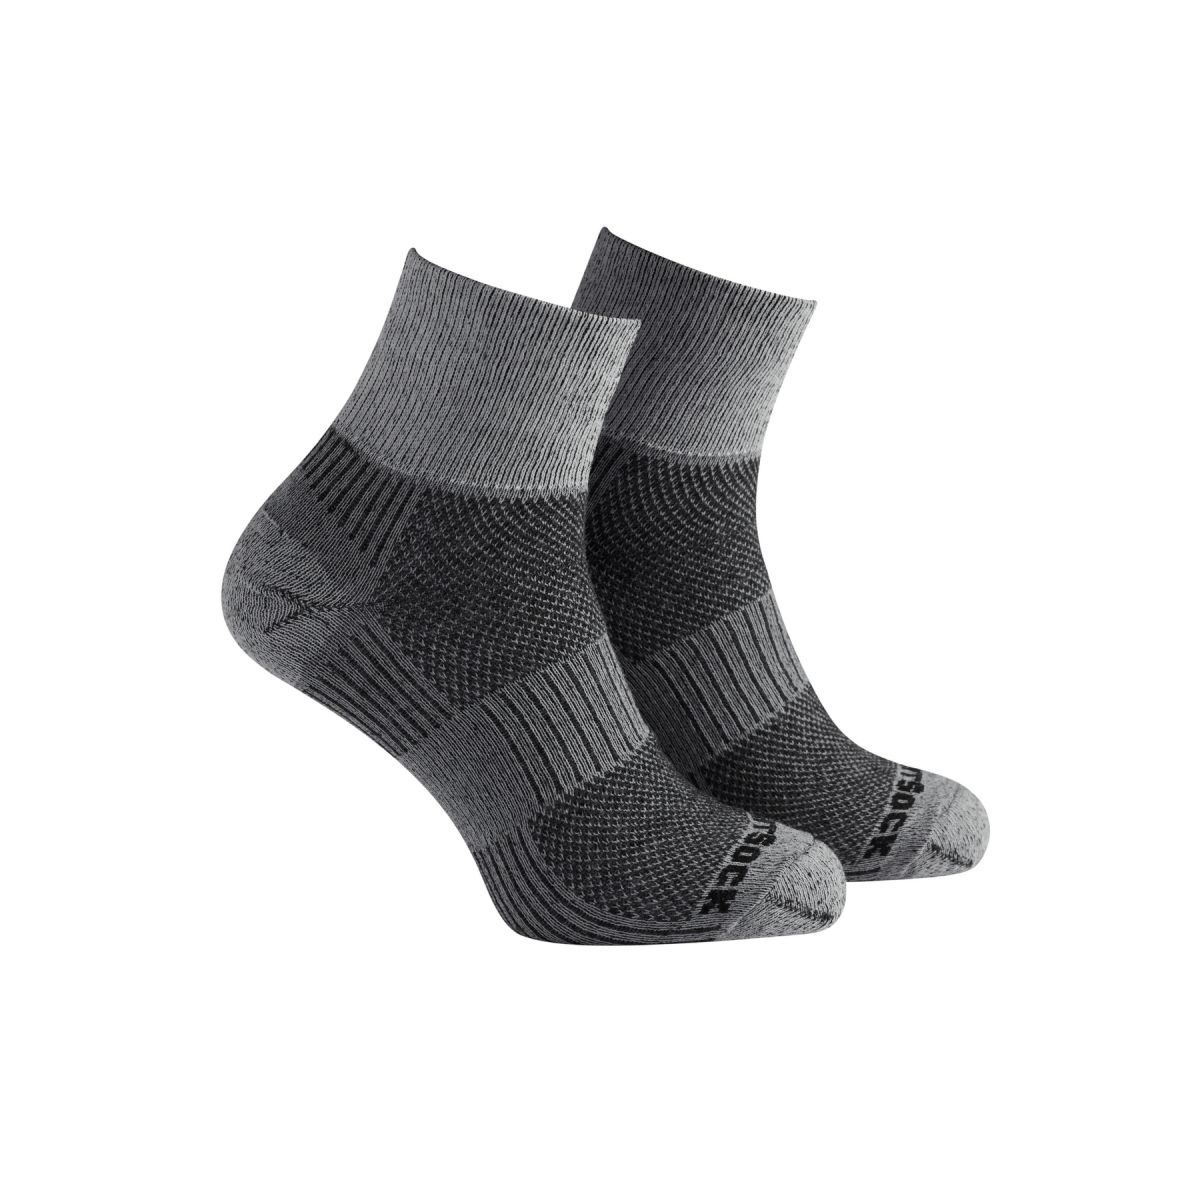 Wrightsock Unisex ECO Light Hike Quarter Wool Socks Black/White - 695.0501 BLACK/WHITE - BLACK/WHITE, Small